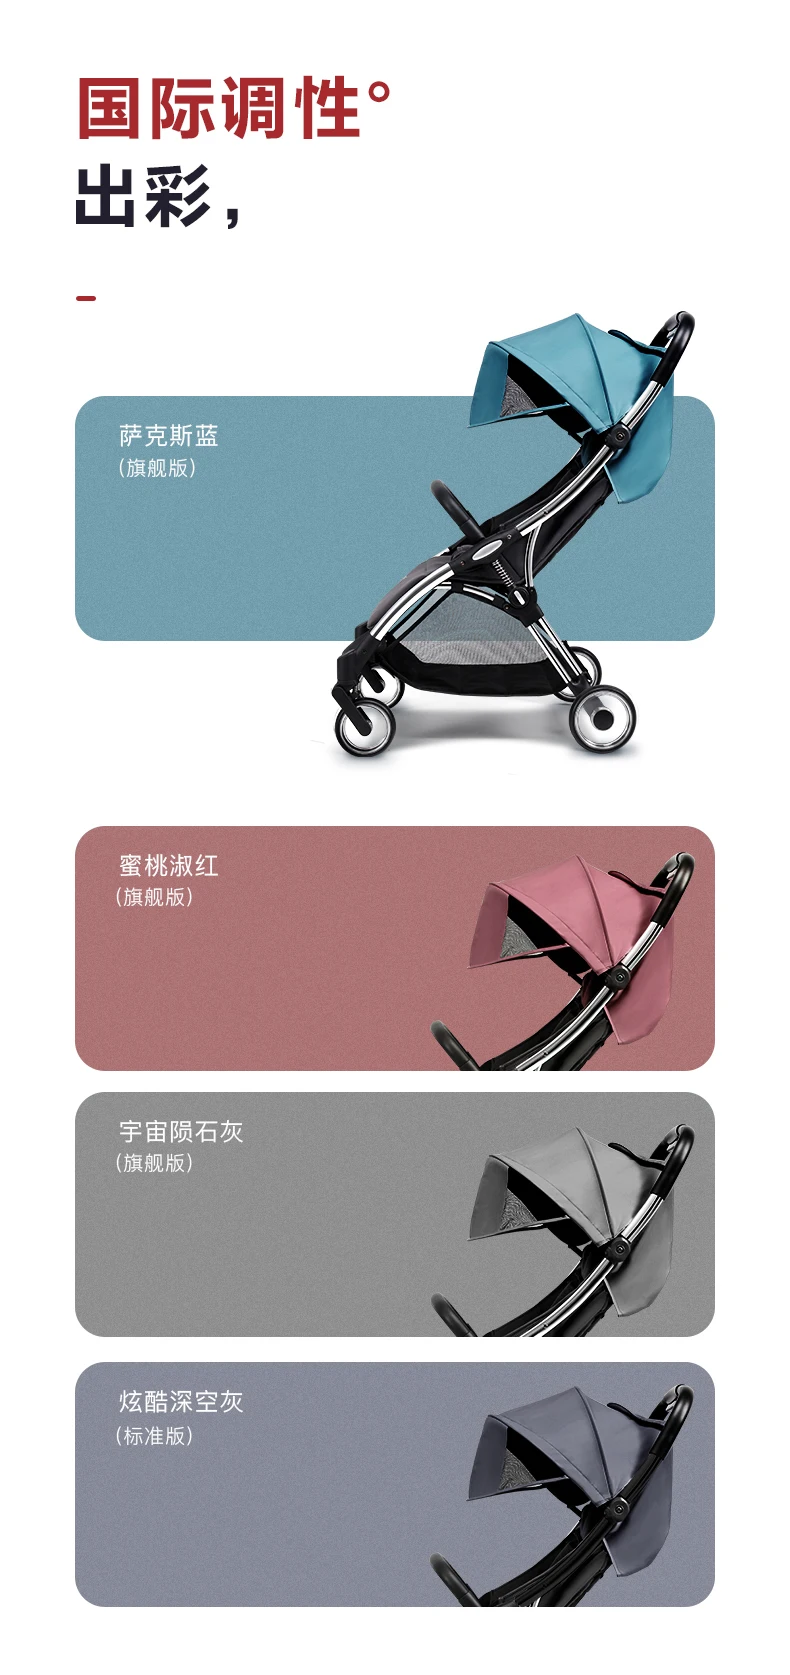 Легкая детская коляска Вес 6 кг может для сидения и лежания вниз сложить четыре колеса гнездо подшипника ширина 34 см доска самолет коляски